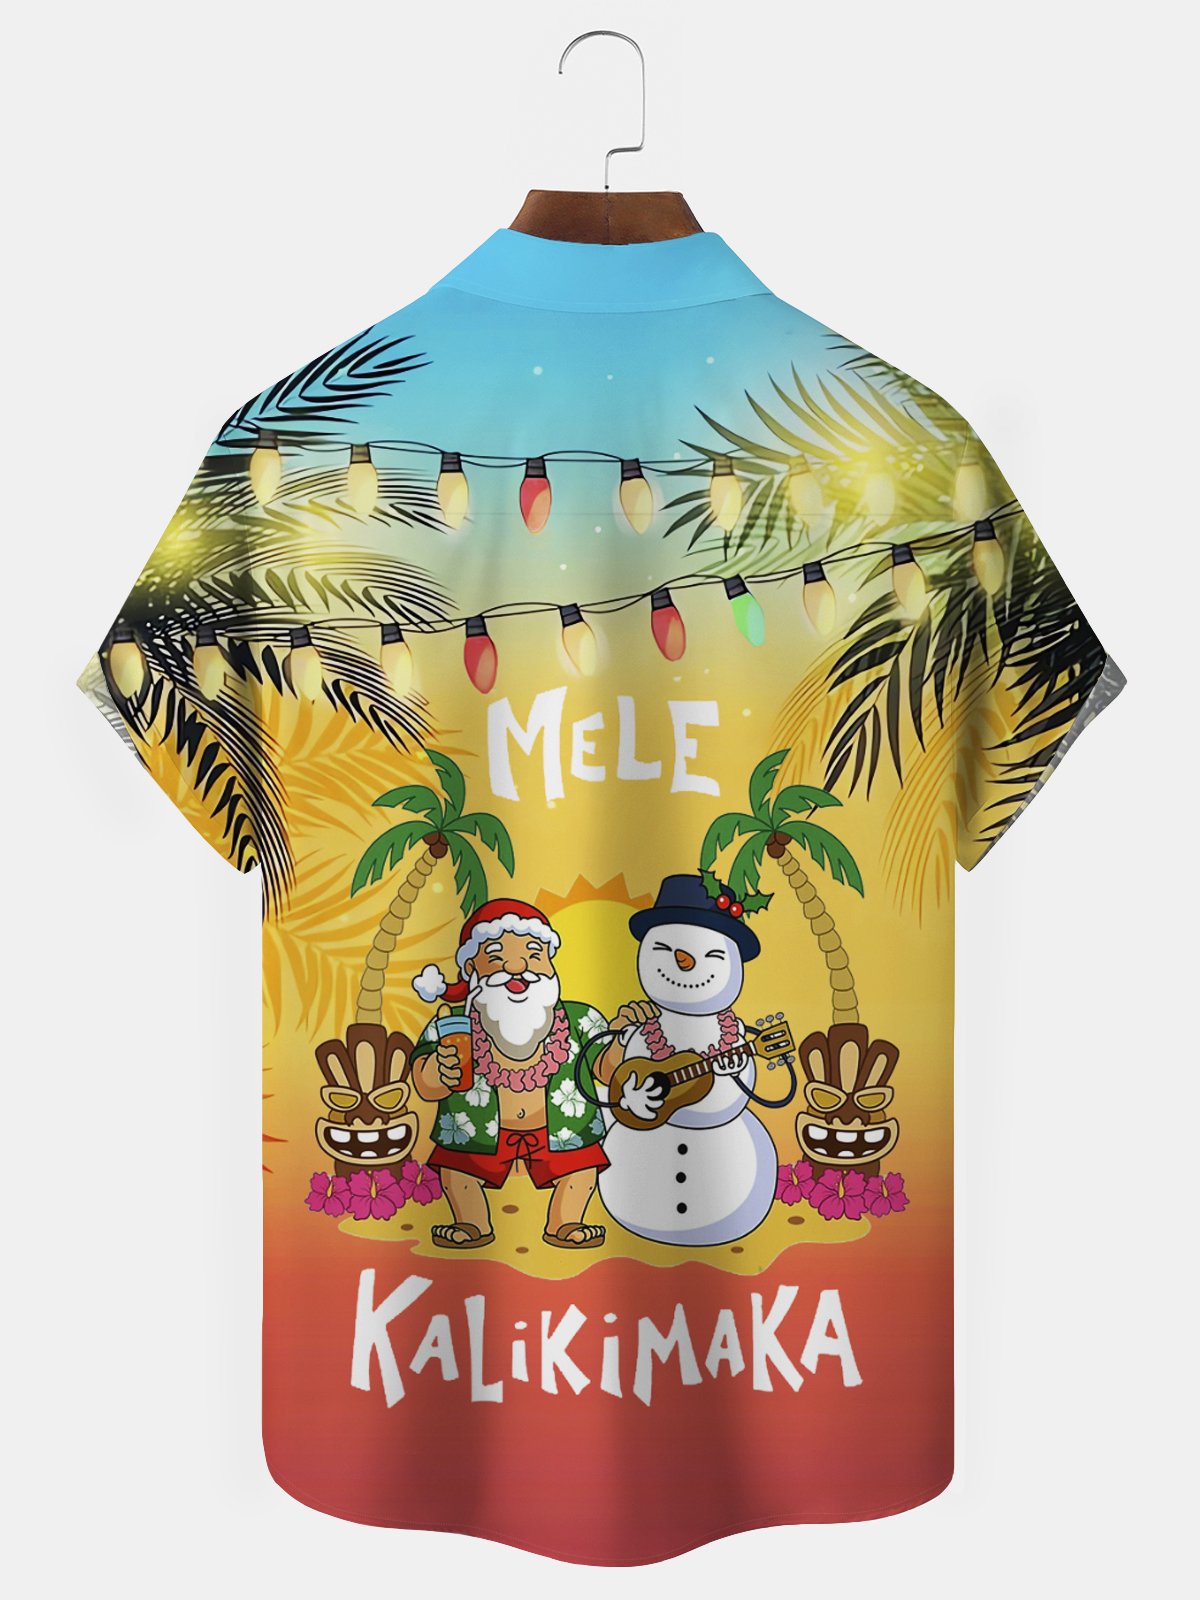 Royaura Christmas Beach Vacation Red Men's Hawaiian Shirts Gradient Mele Kalikimaka Fun Santa Pocket Shirts